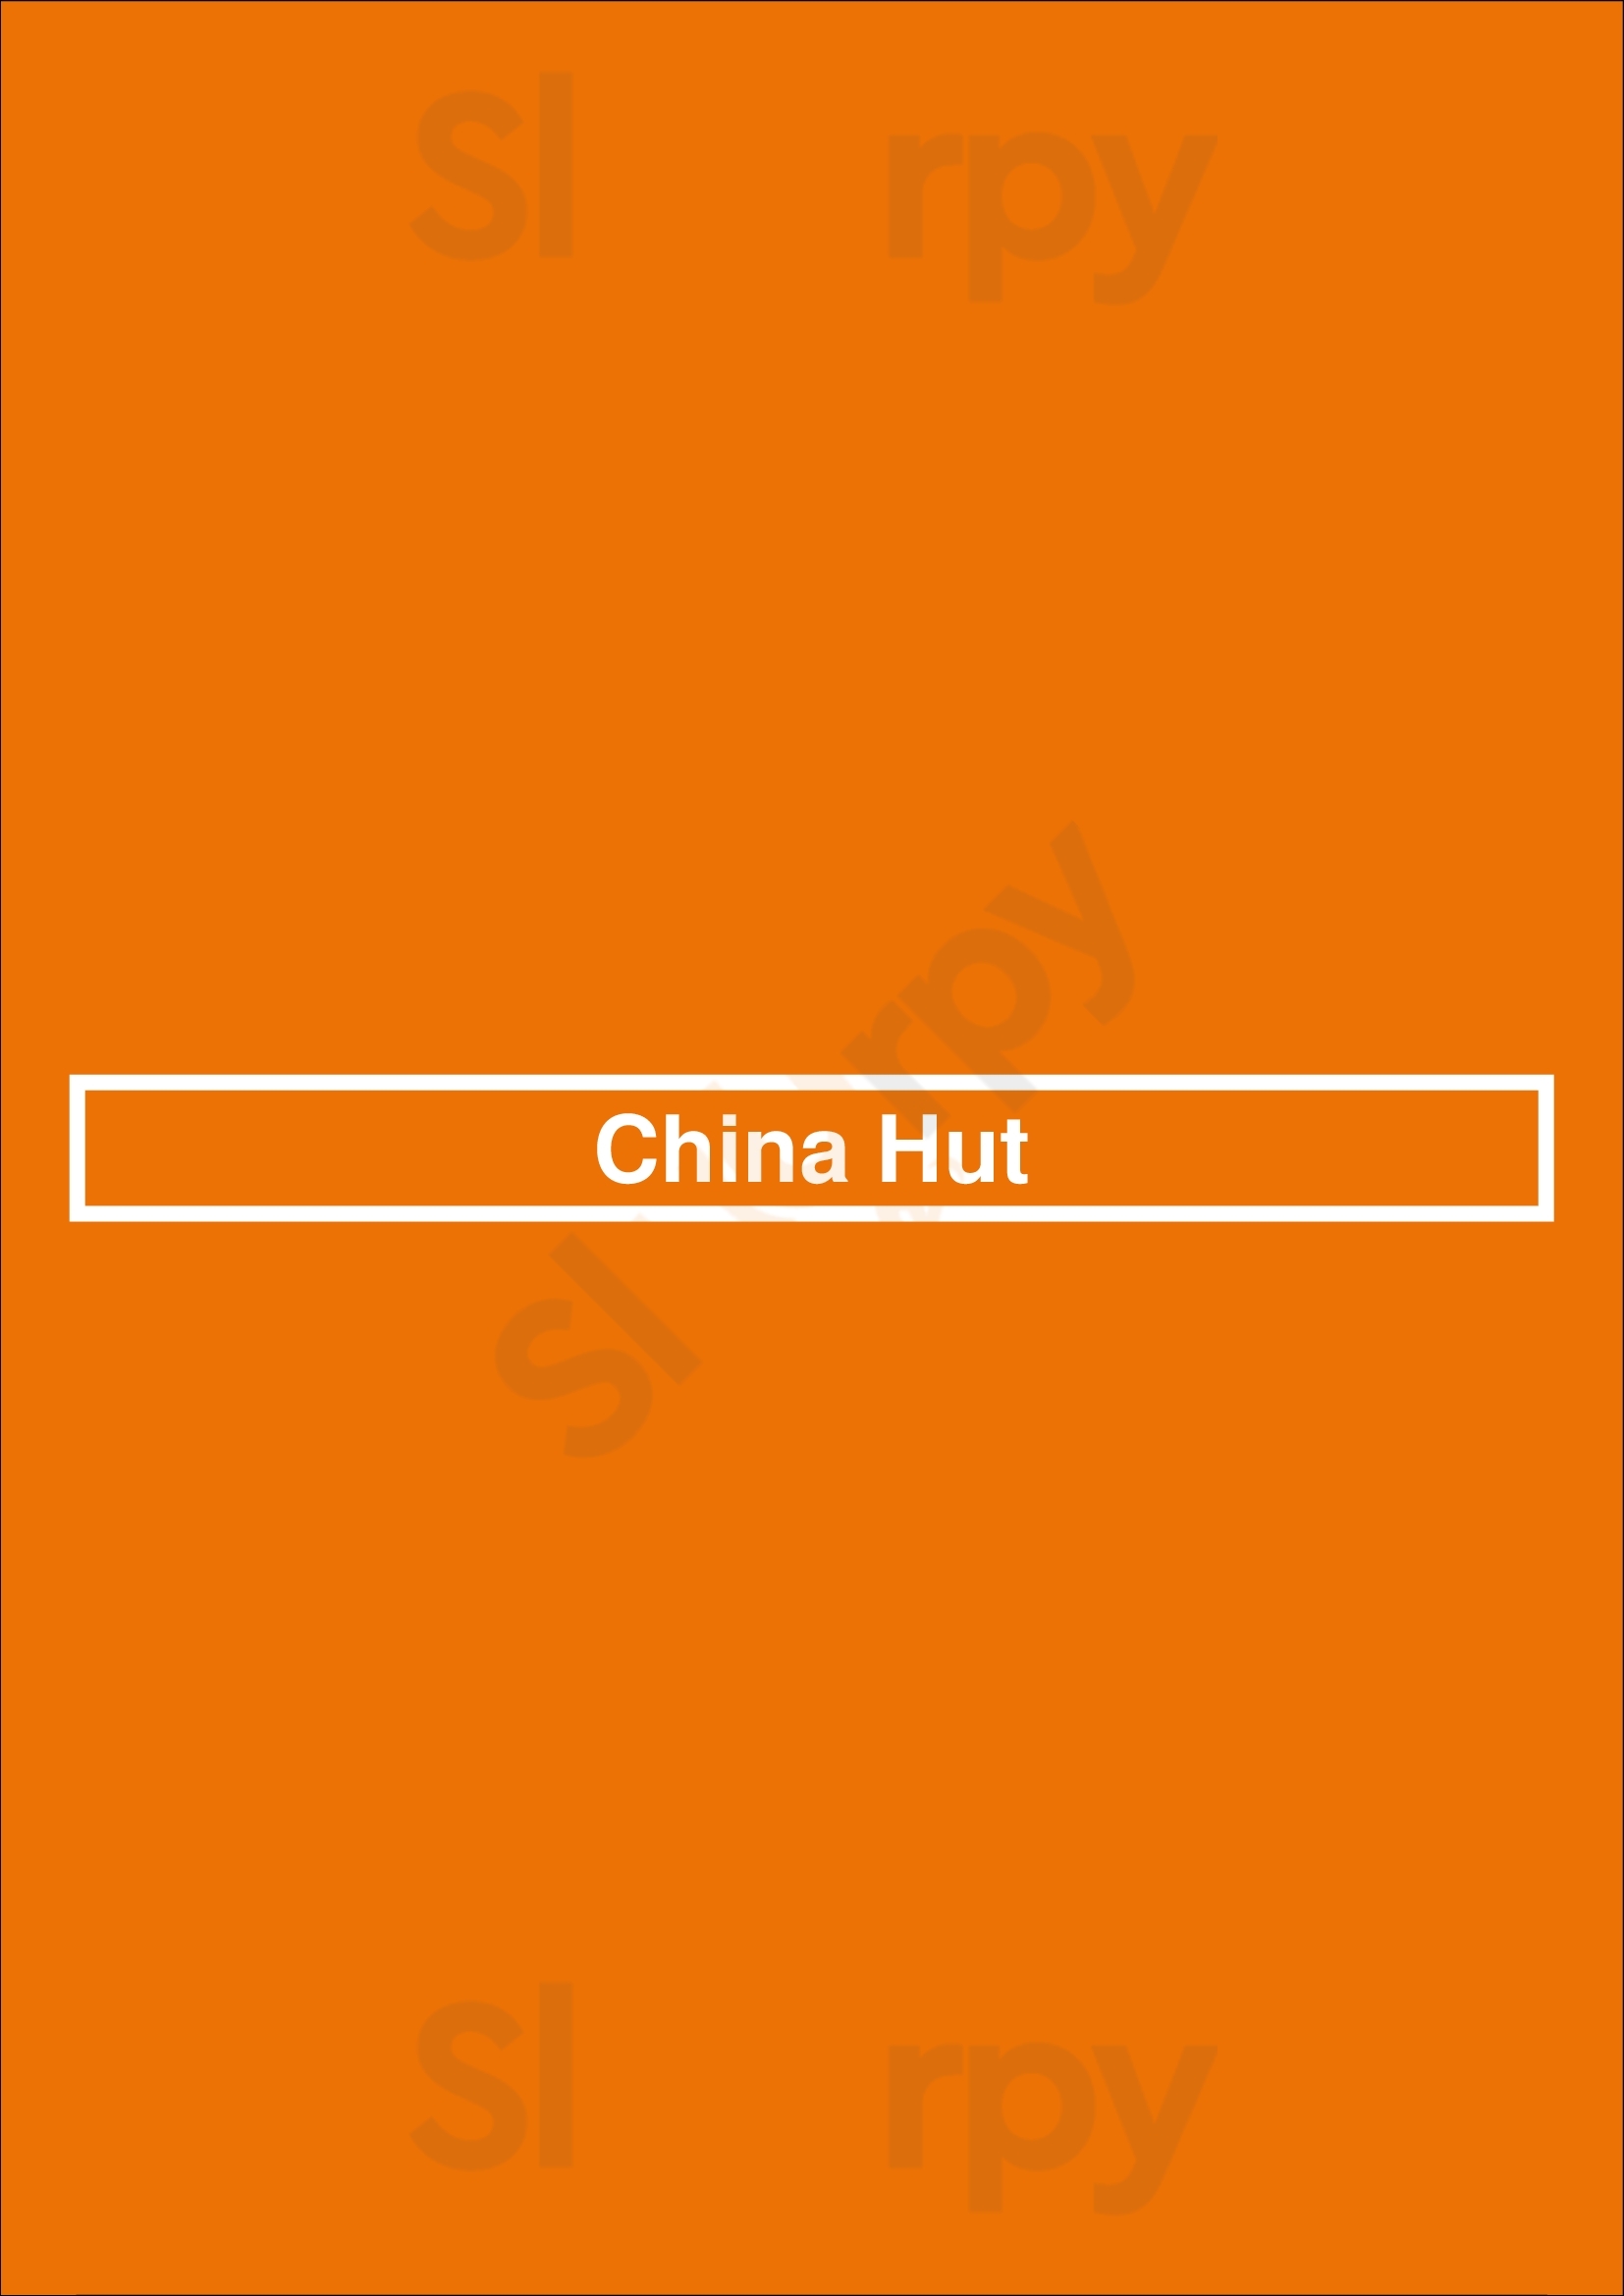 China Hut Chicago Menu - 1